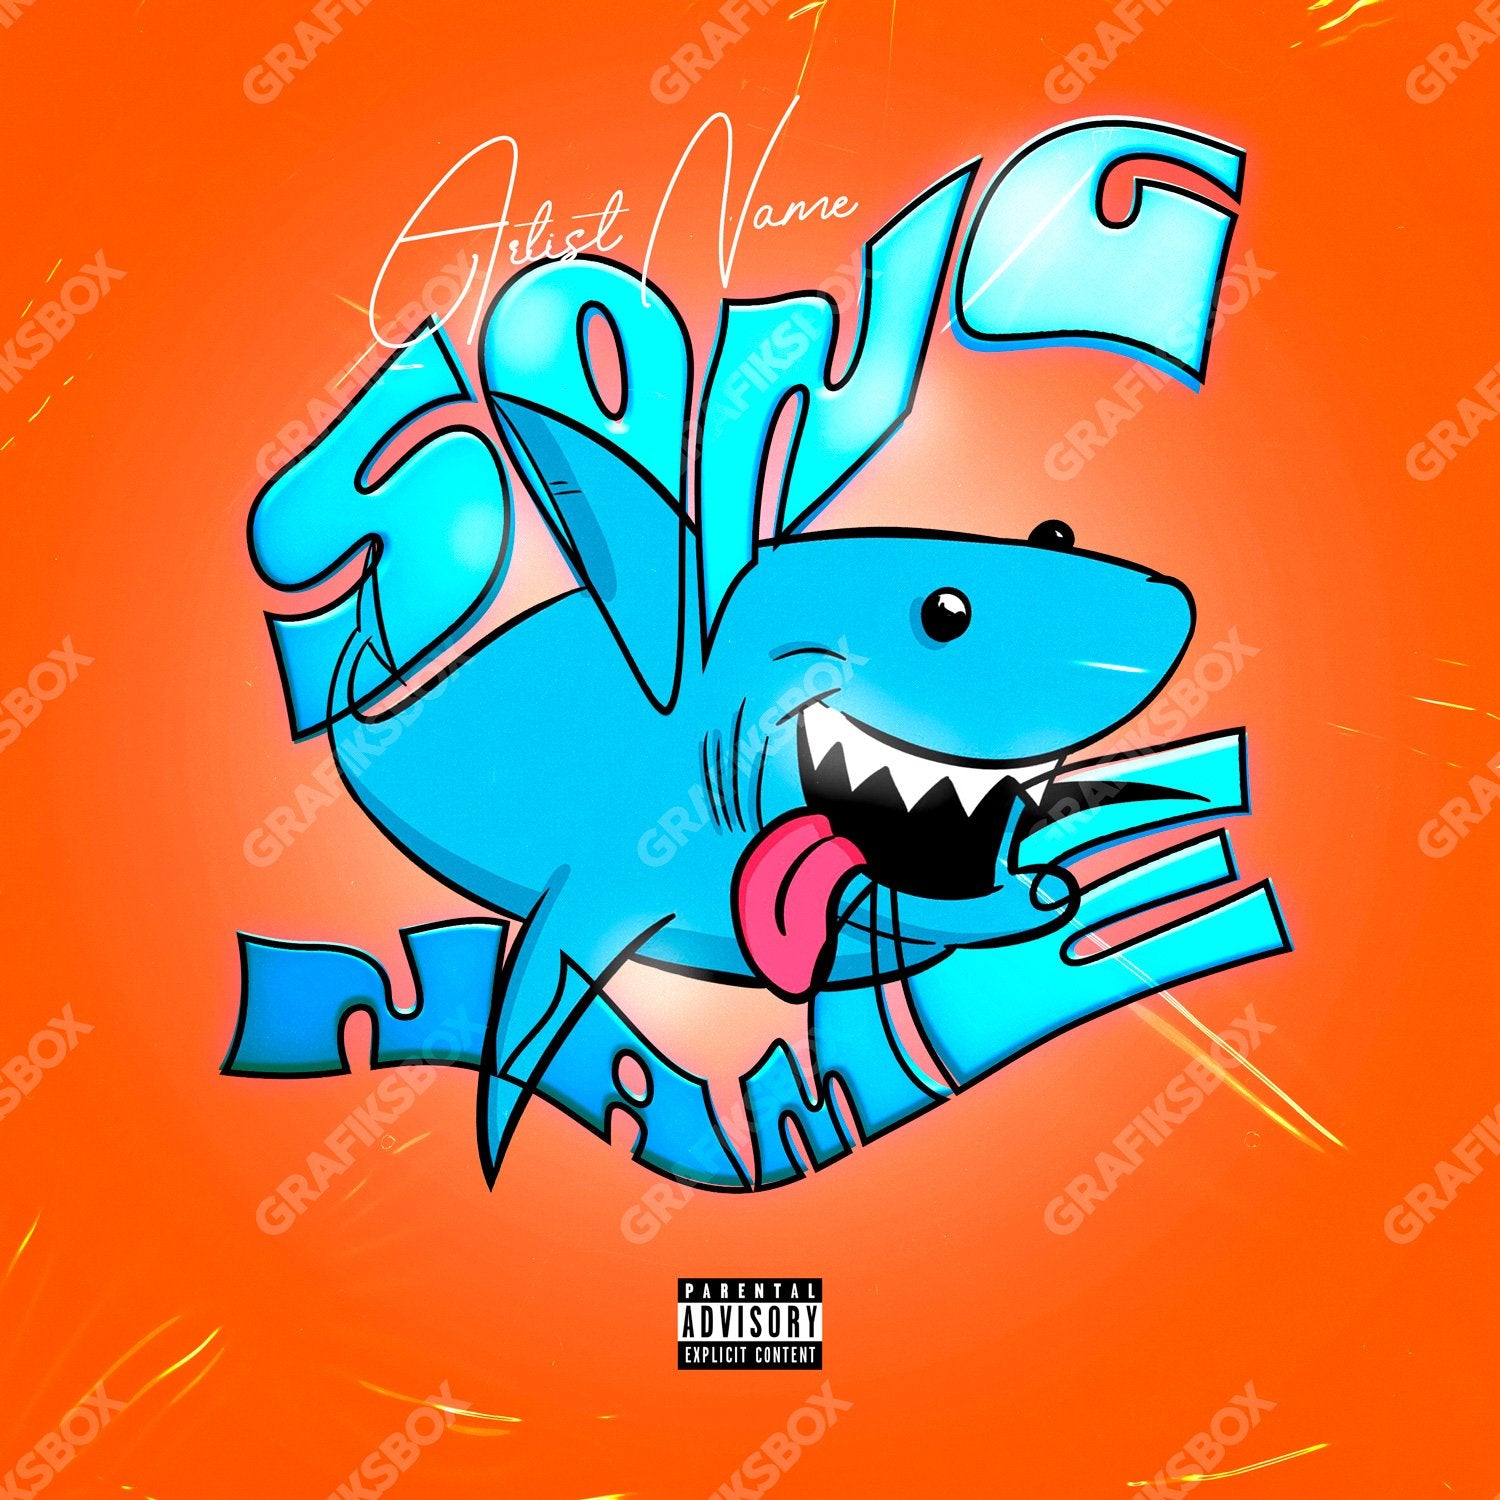 Baby Shark premade cover art